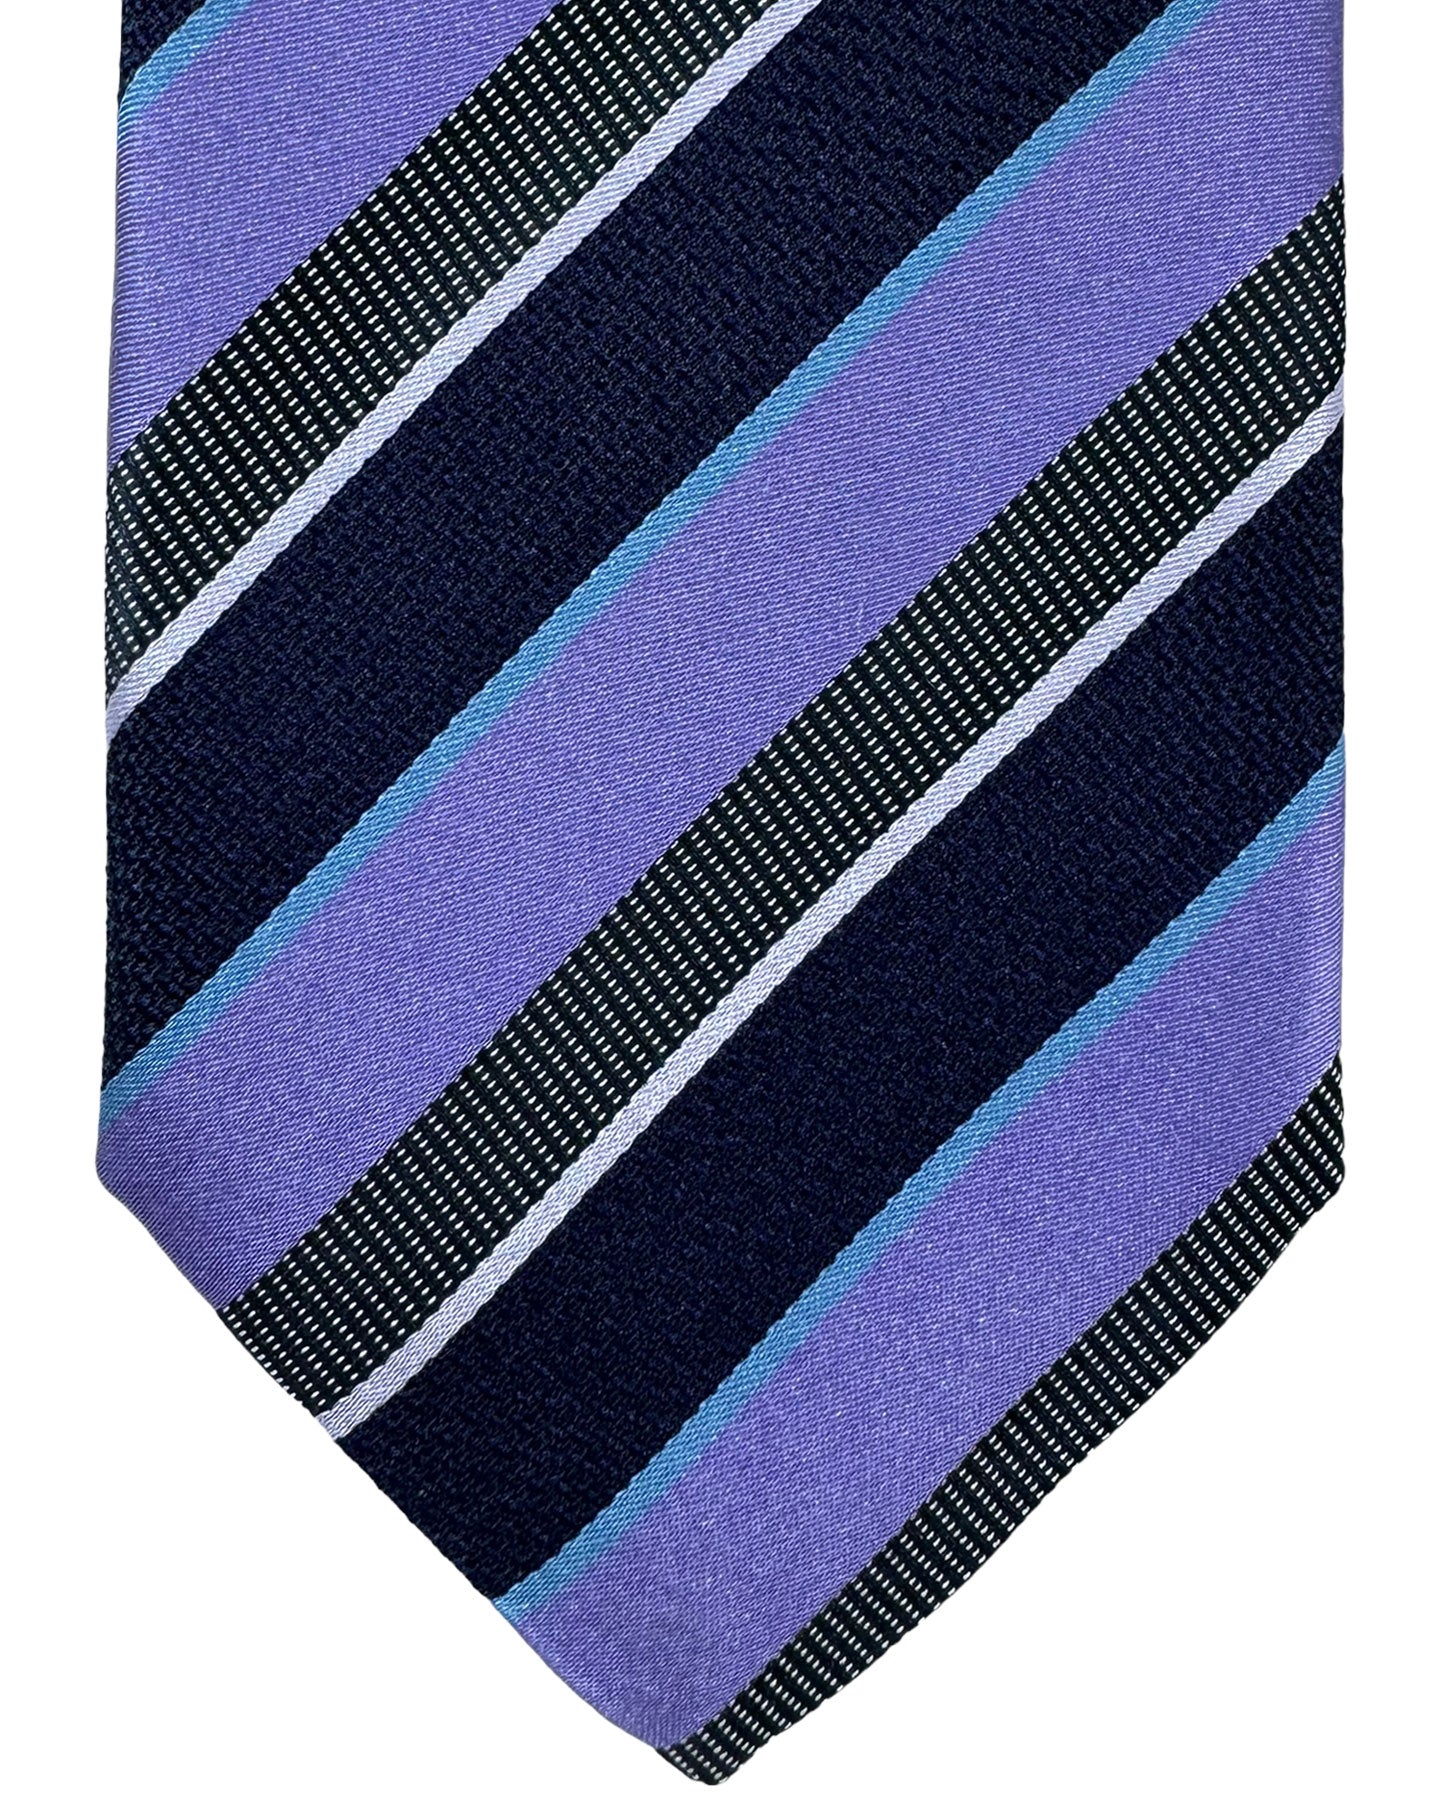 Canali Silk Tie Purple Dark Blue Stripes Pattern - Classic Italian